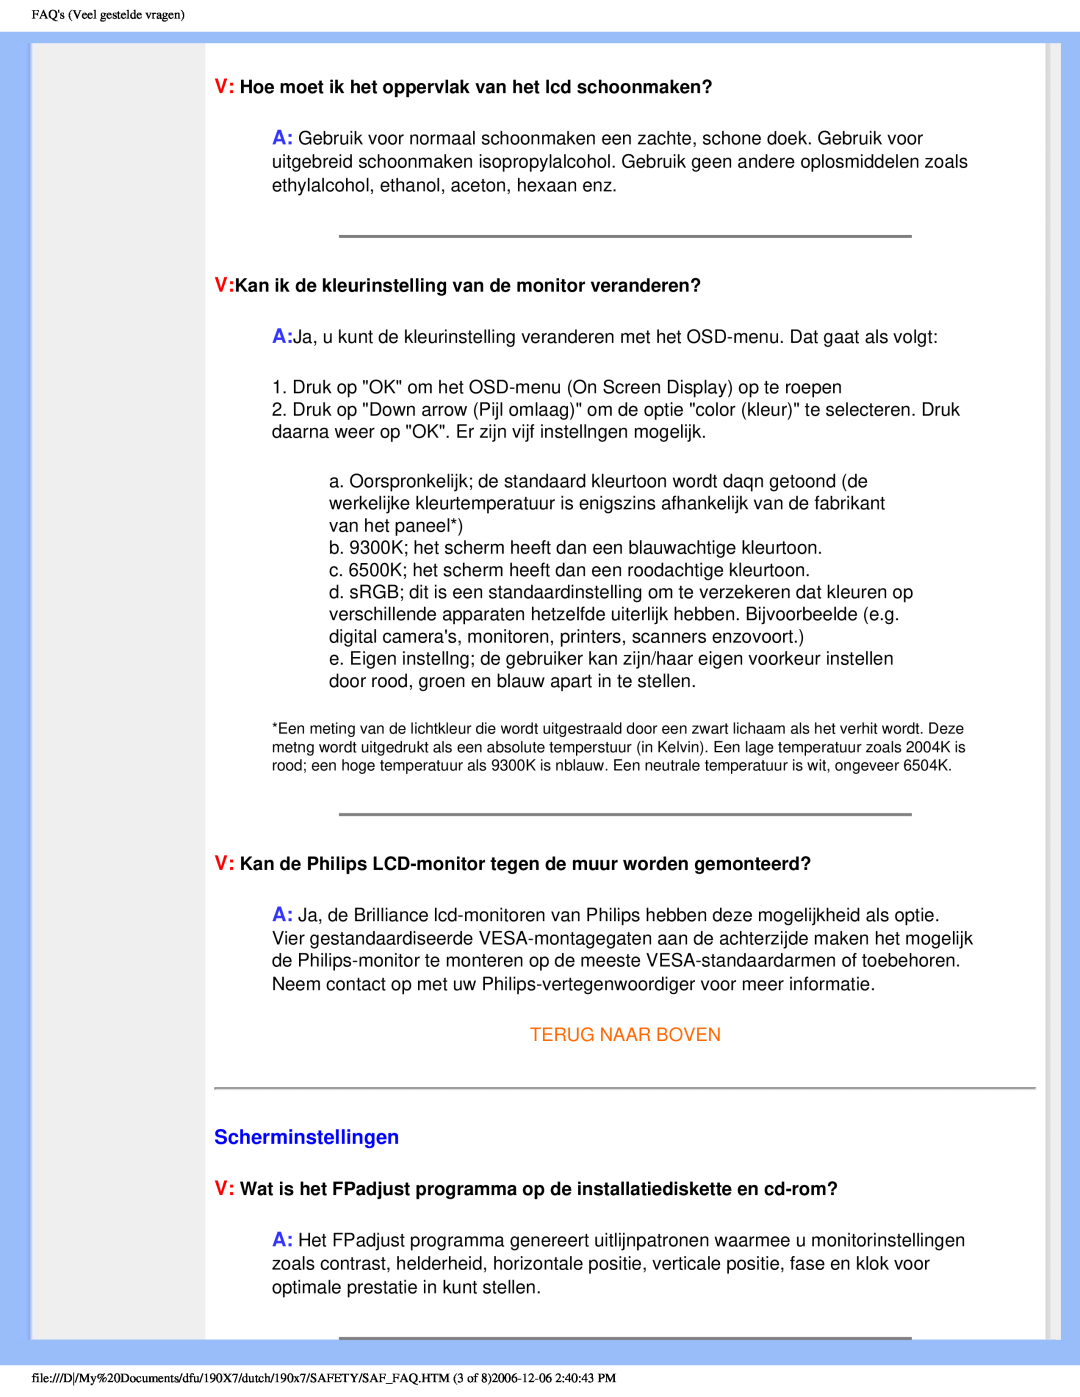 Philips 190X7 user manual Scherminstellingen, Terug Naar Boven, FAQs Veel gestelde vragen 